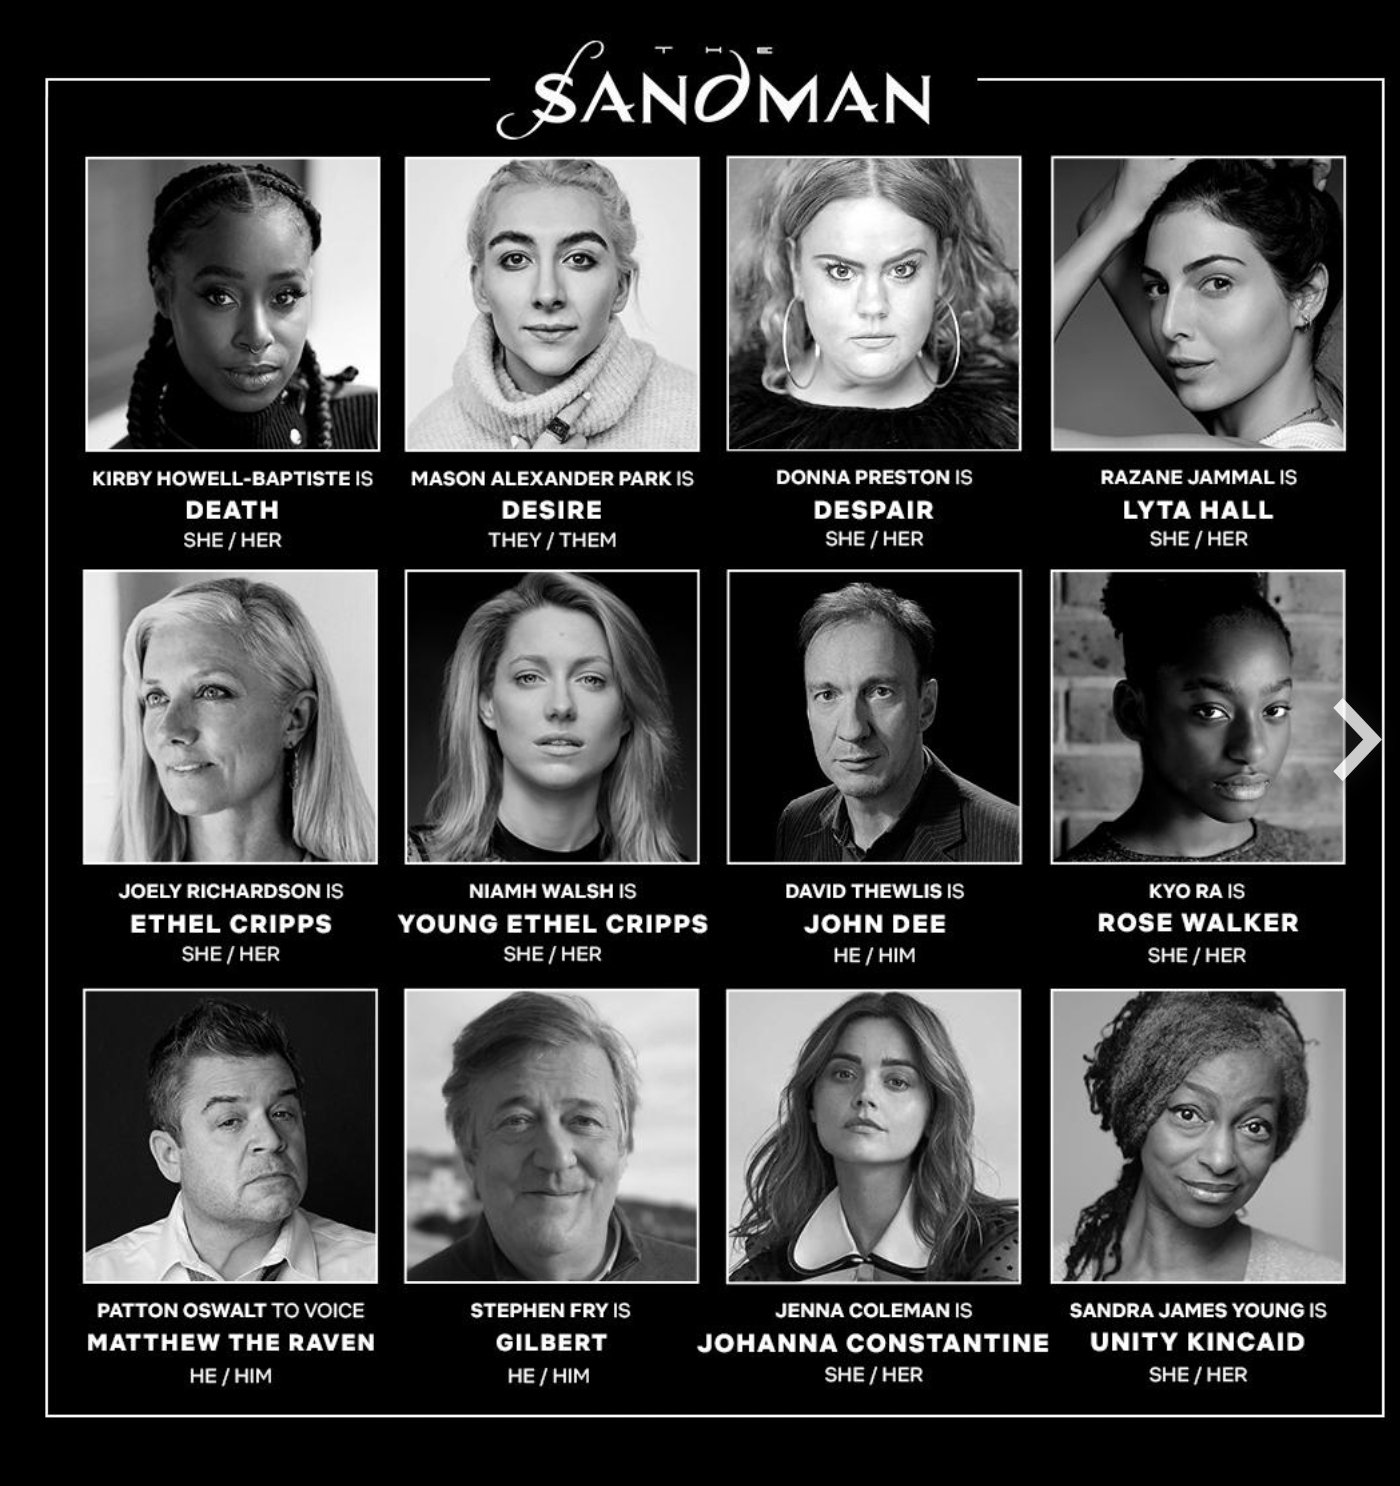 Nuevos miembros del reparto anunciados para la serie original The Sandman de Netflix